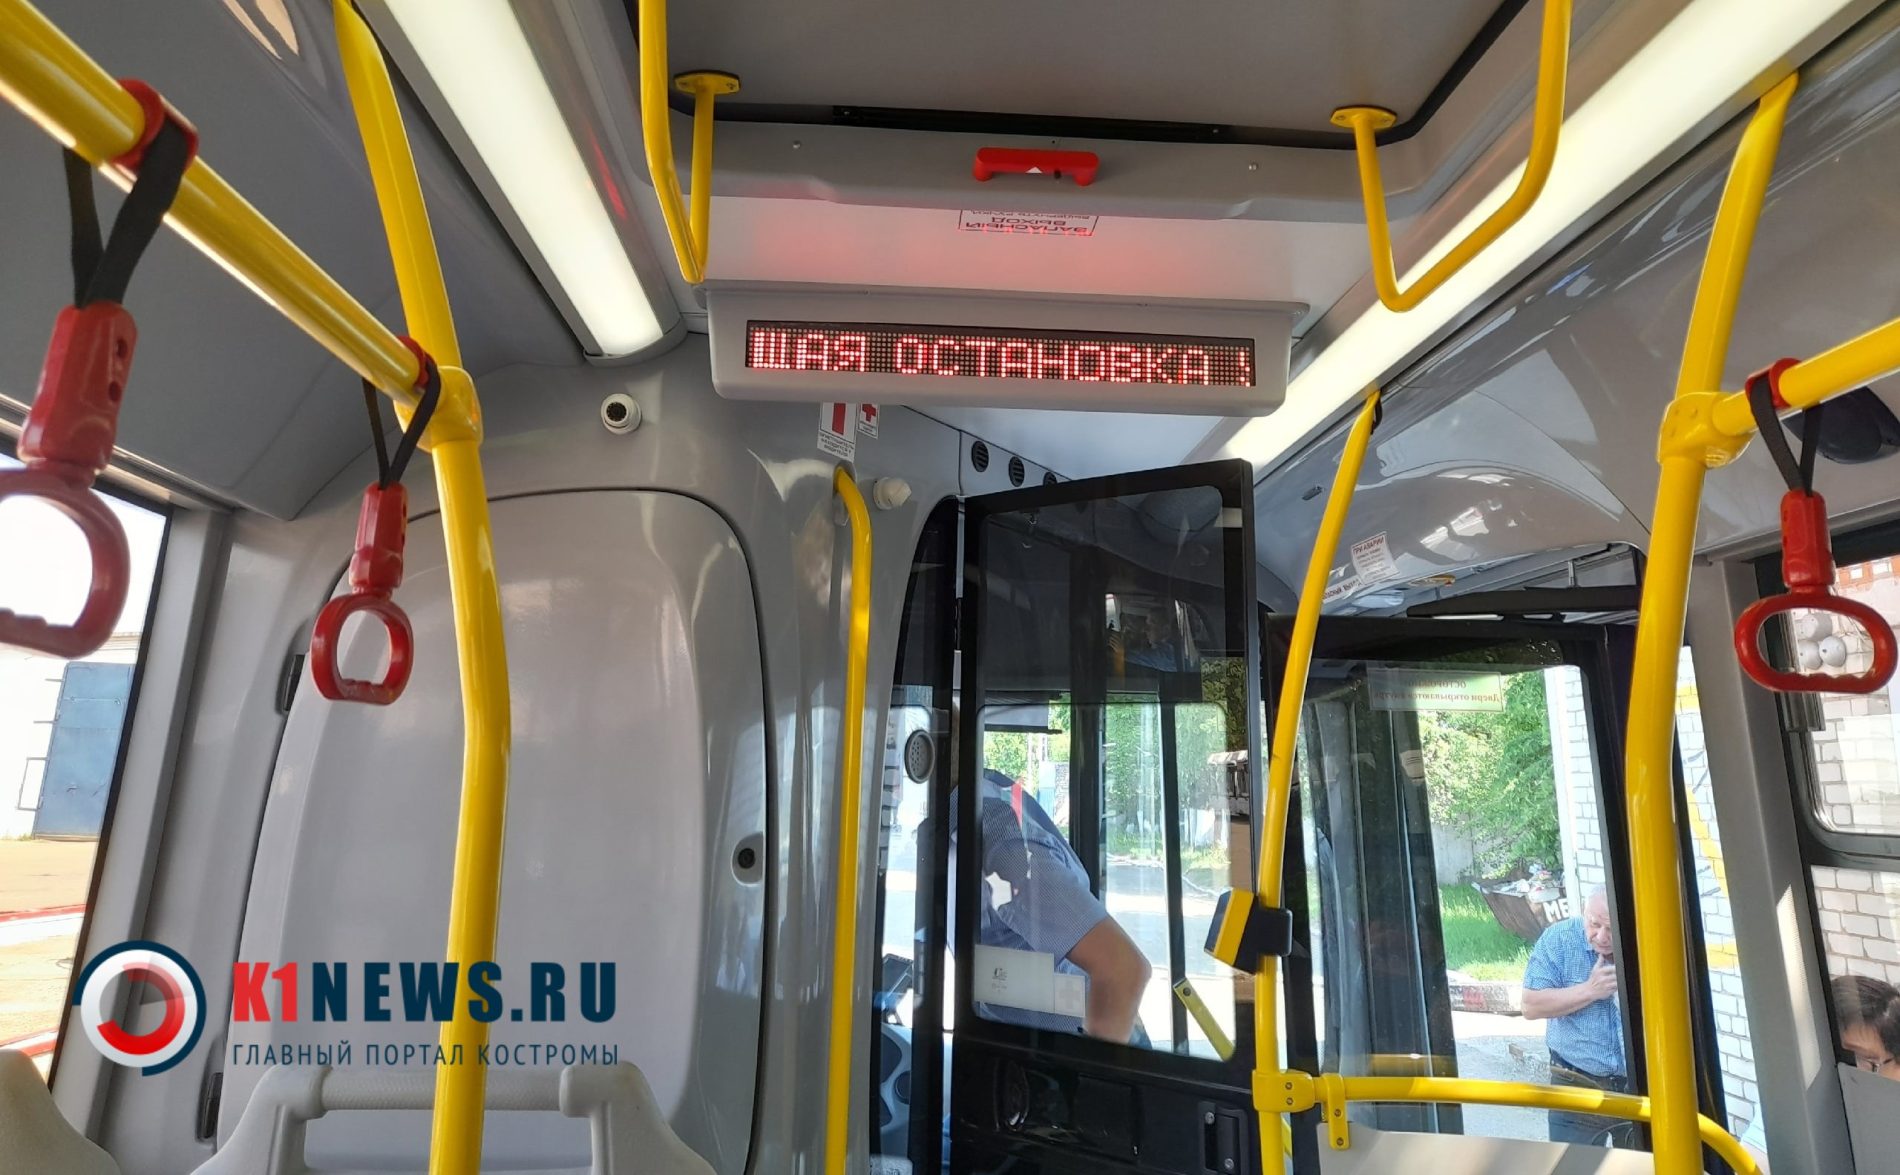 Женщина упала в костромском автобусе и получила травму